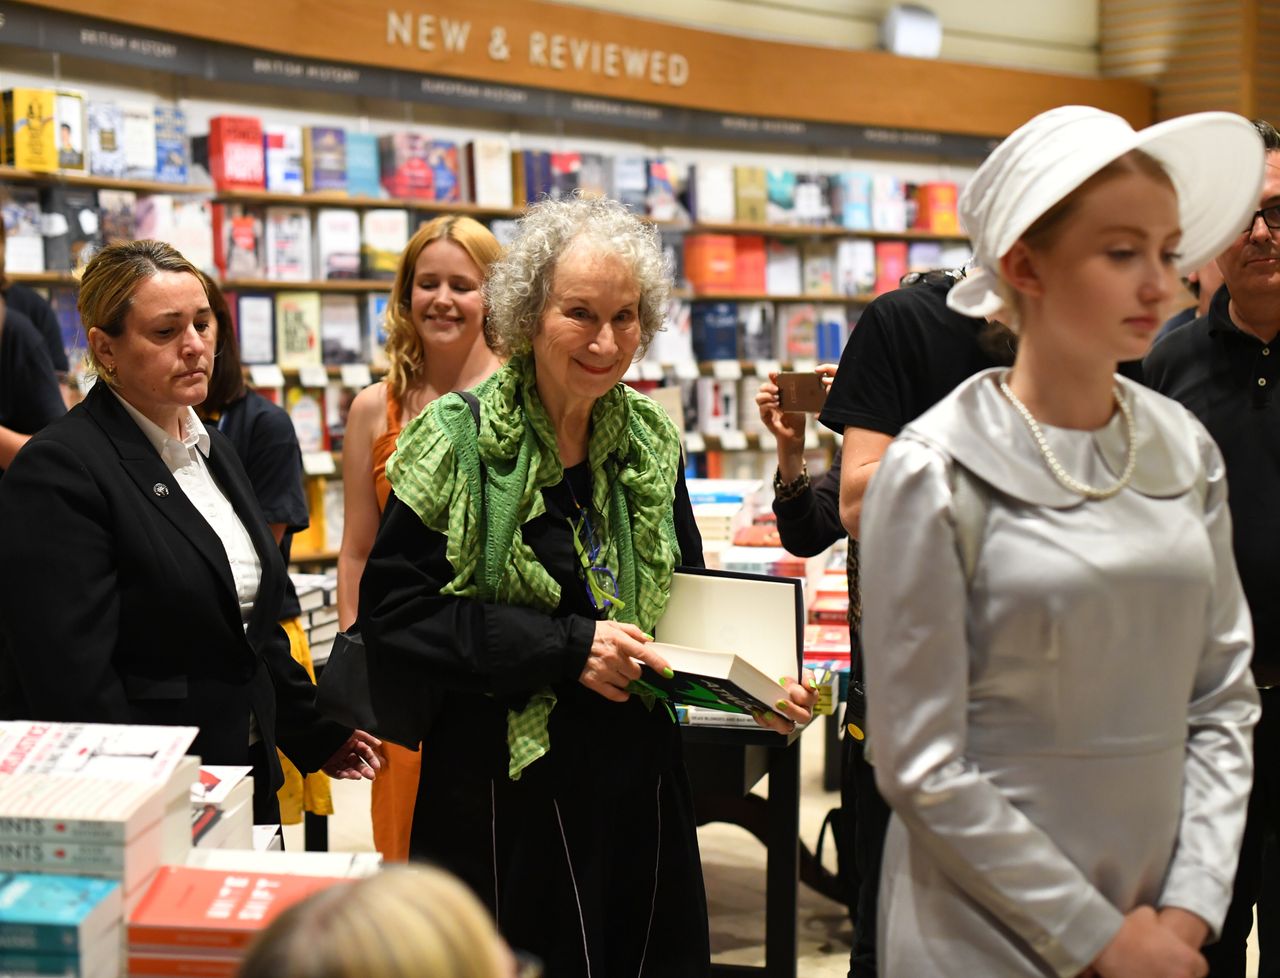 Η Μάργκαρετ Ατγουντ στην μεσονύκτια κυκλοφορία του βιβλίου της «The Testaments» στο Λονδίνο.